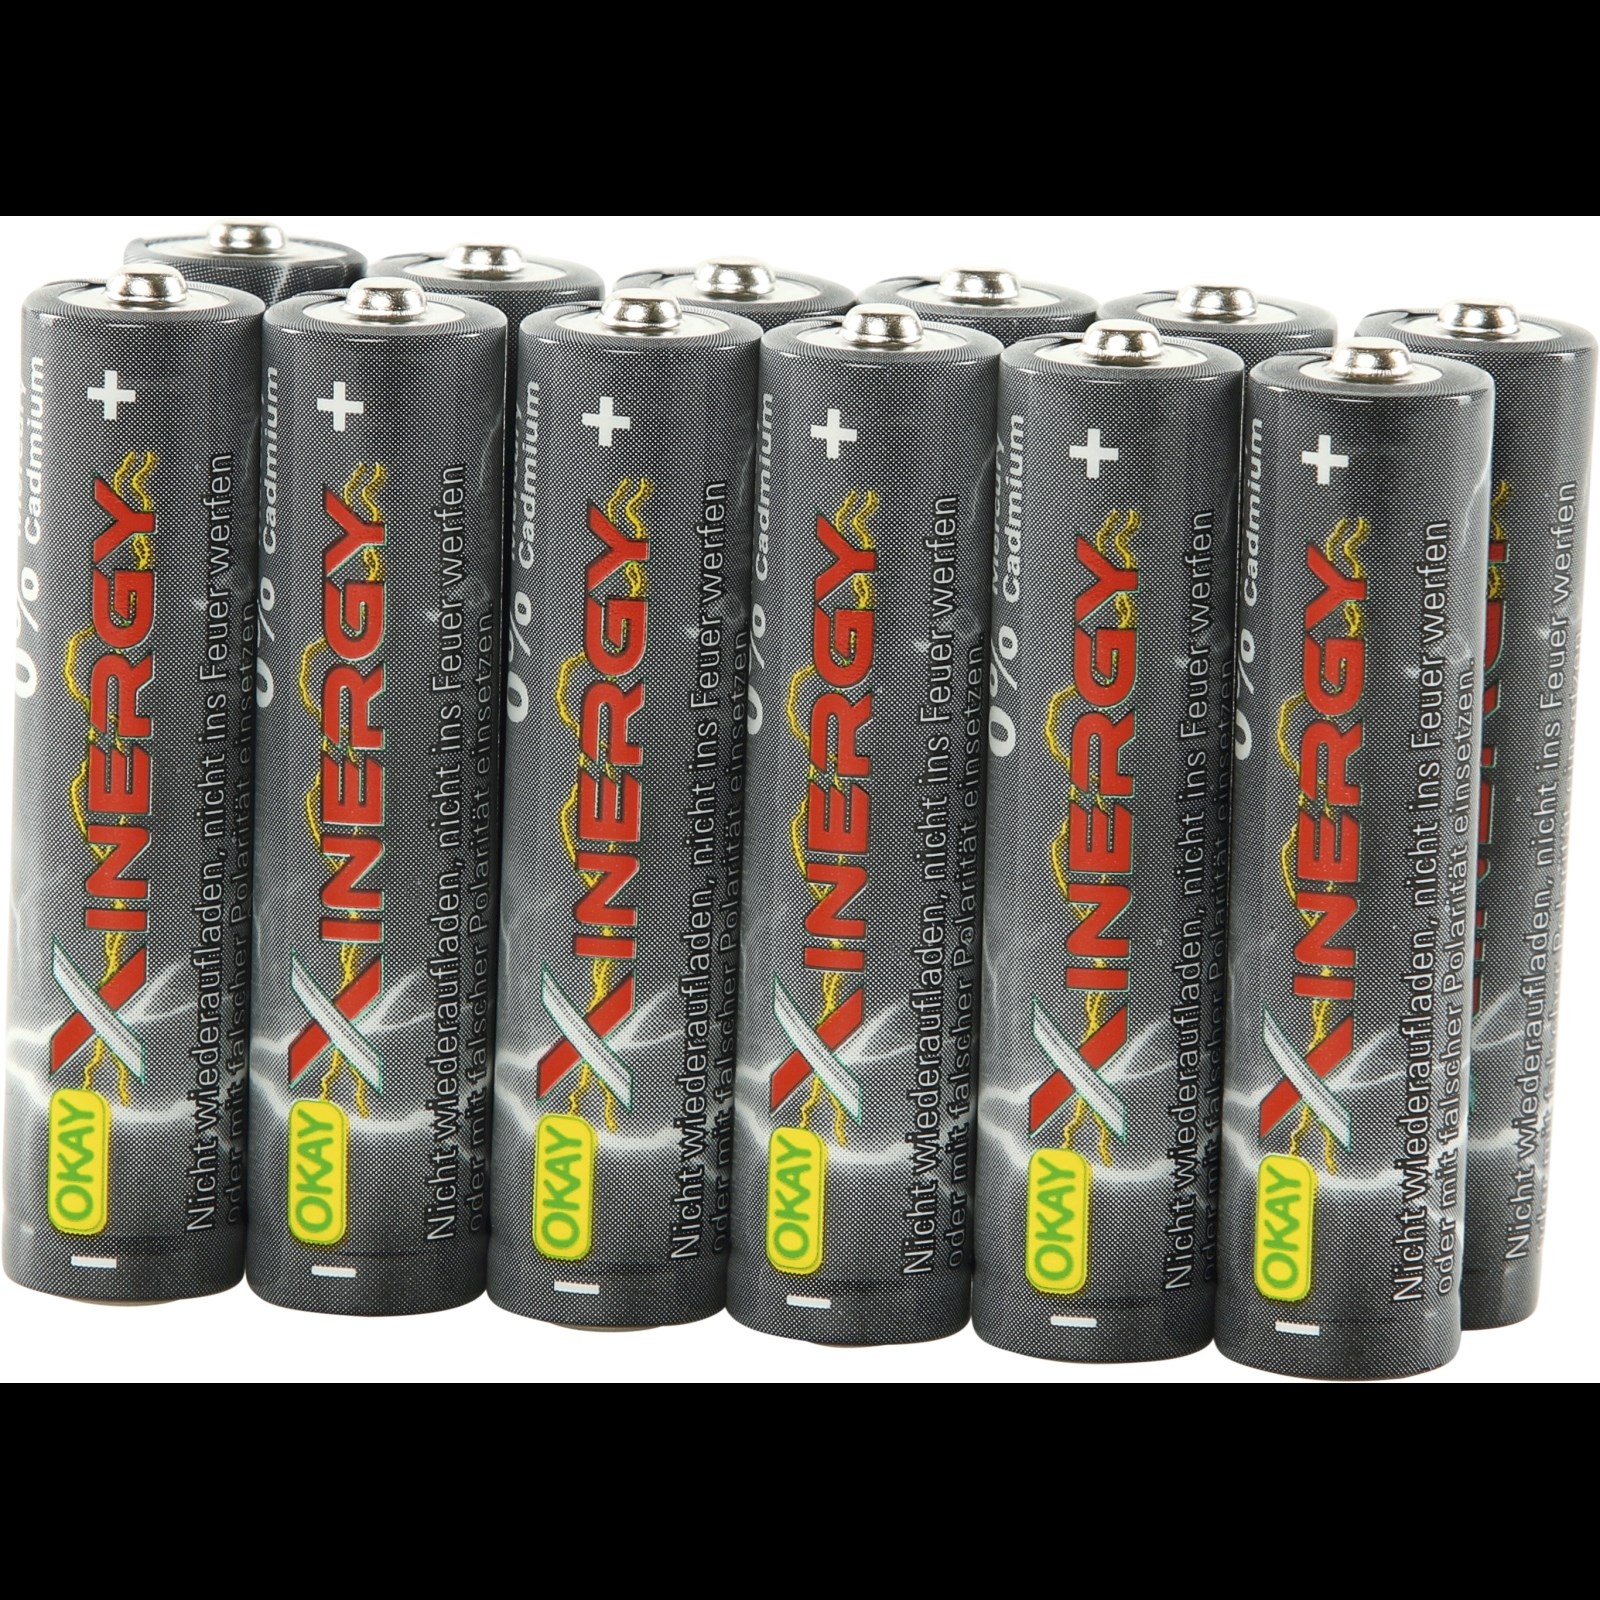 Batterie LR03 AAA 12Stk kaufen - Batterien - LANDI